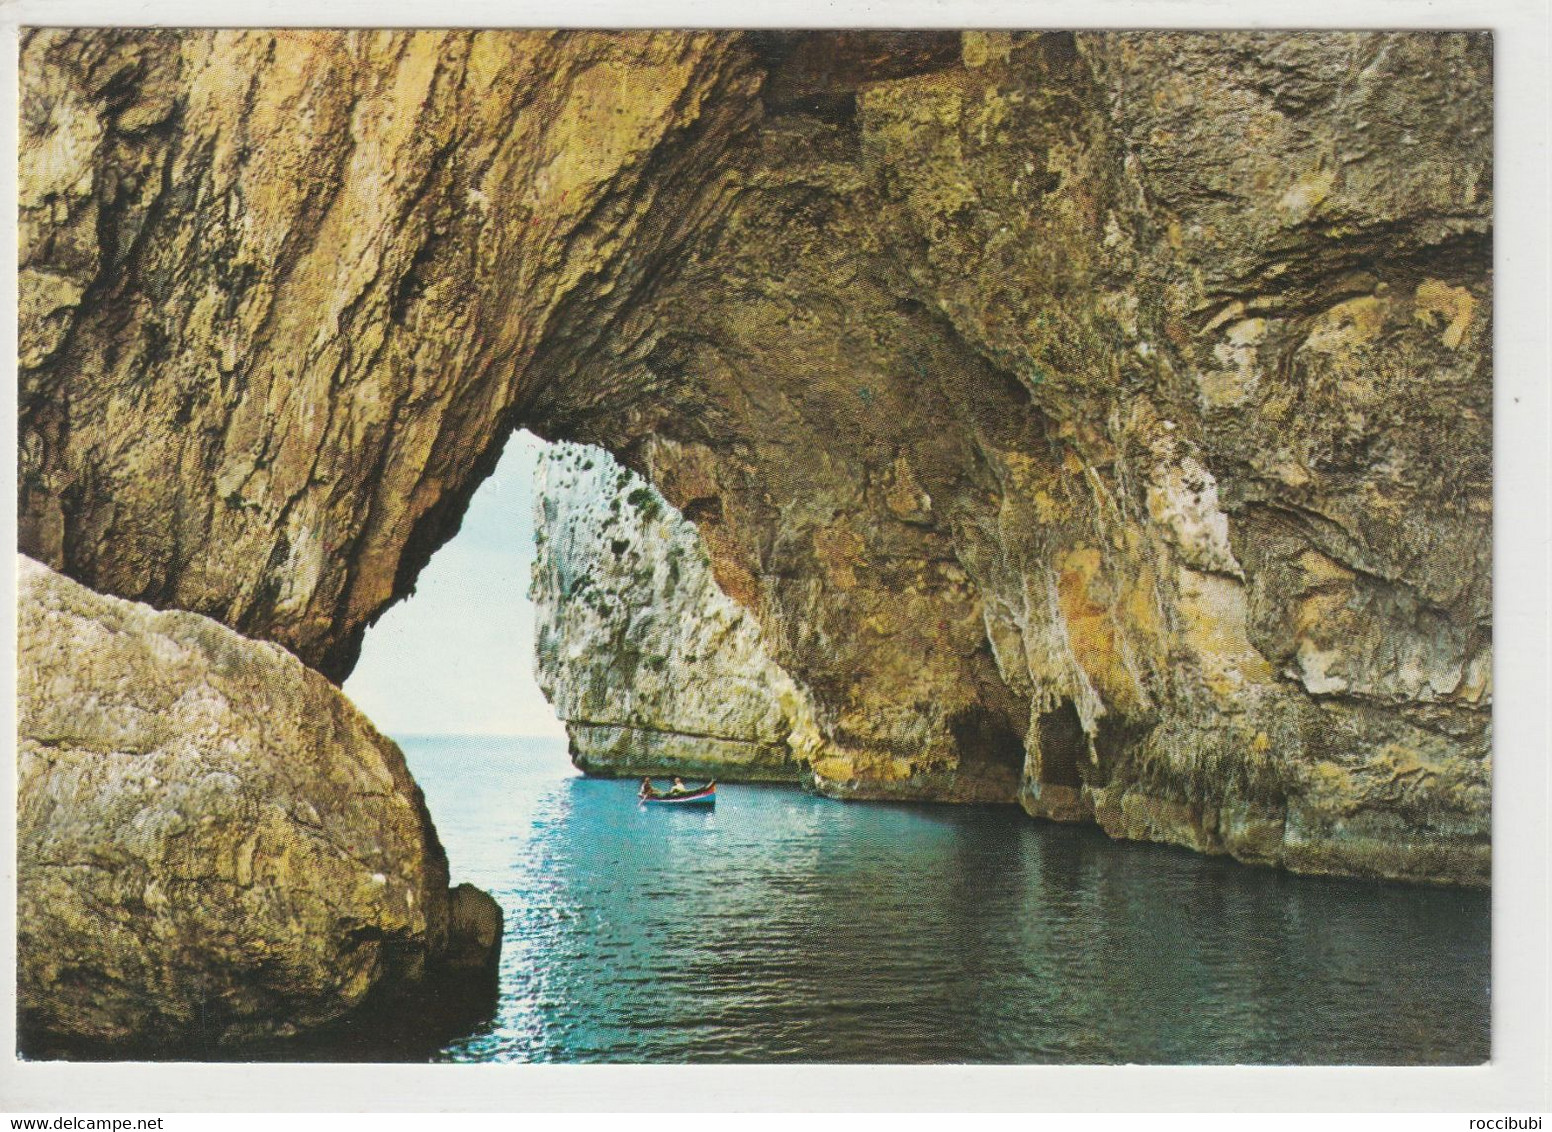 Malta, Blue Grotto - Malta